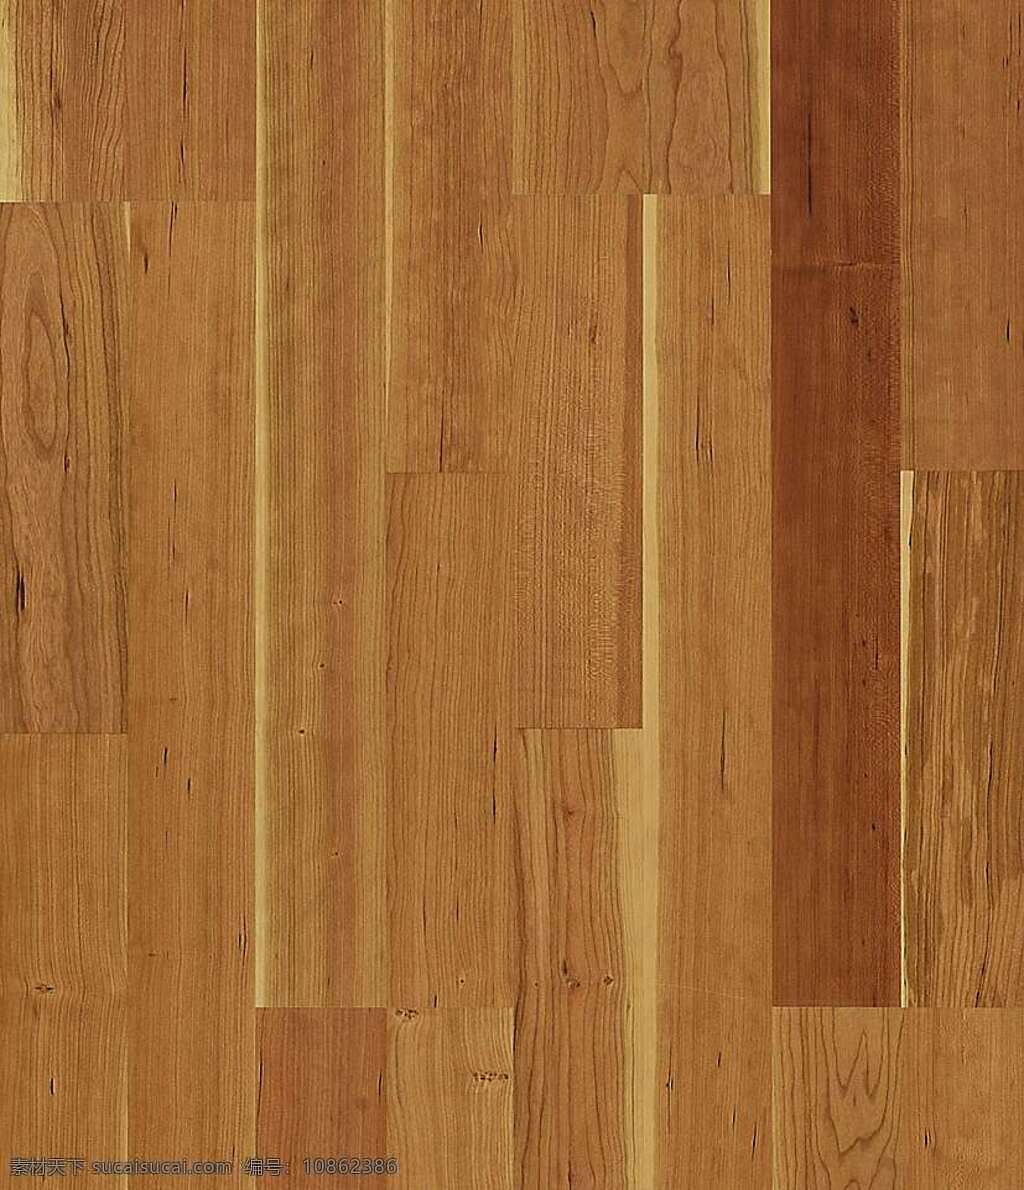 木地板 贴图 室内设计 木材贴图 木地板贴图 木地板效果图 木地板材质 地板设计素材